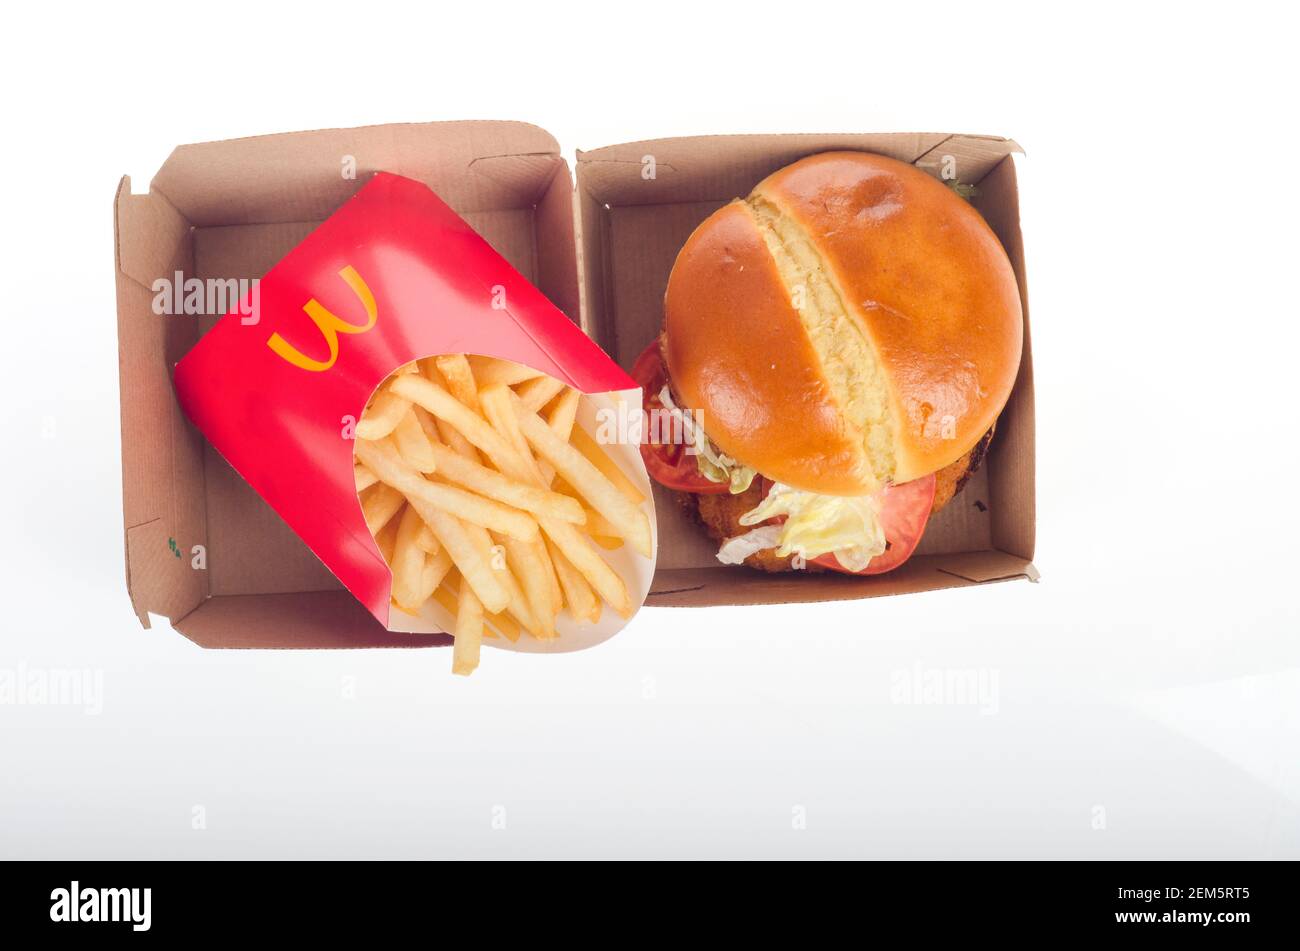 McDonalds New Crispy Chicken Sandwich Deluxe avec frites et boîte. Publié le 24 février 2021 Banque D'Images